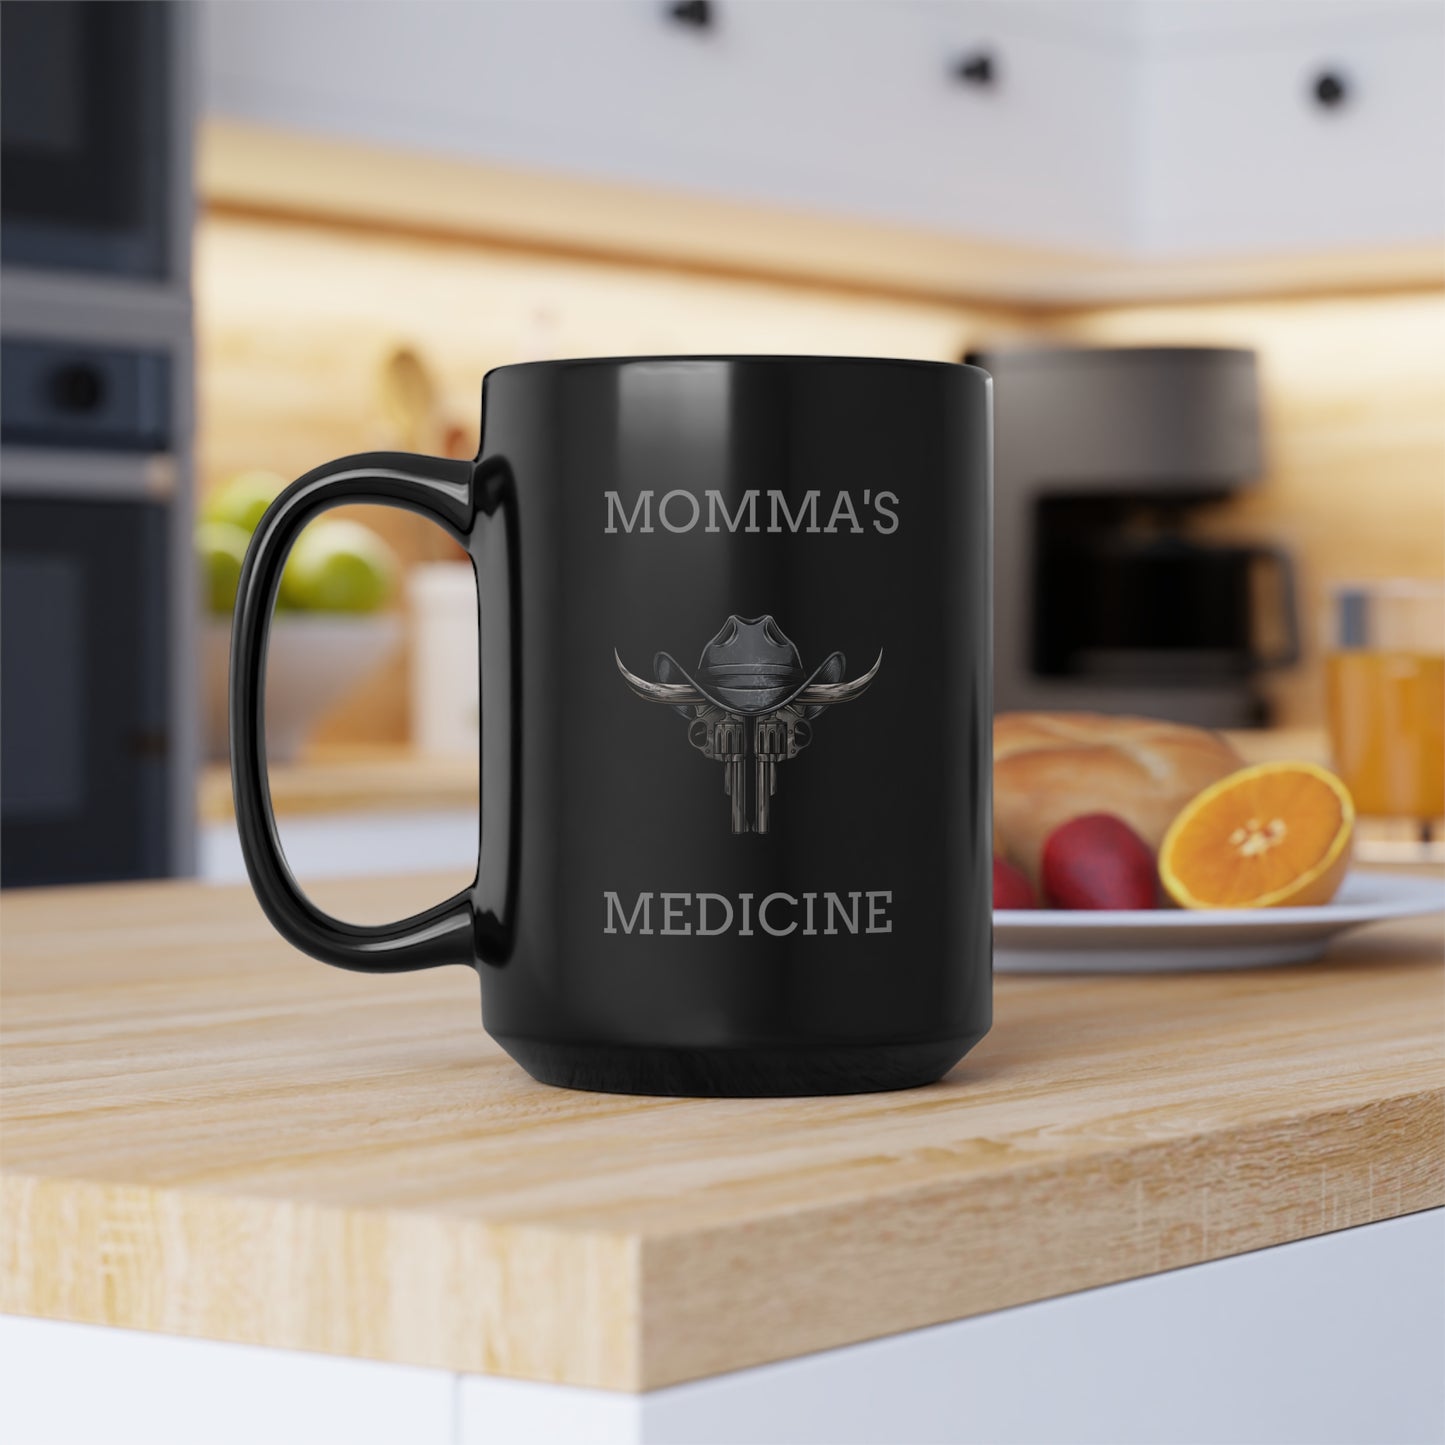 "MOMMA'S MEDICINE" Mug